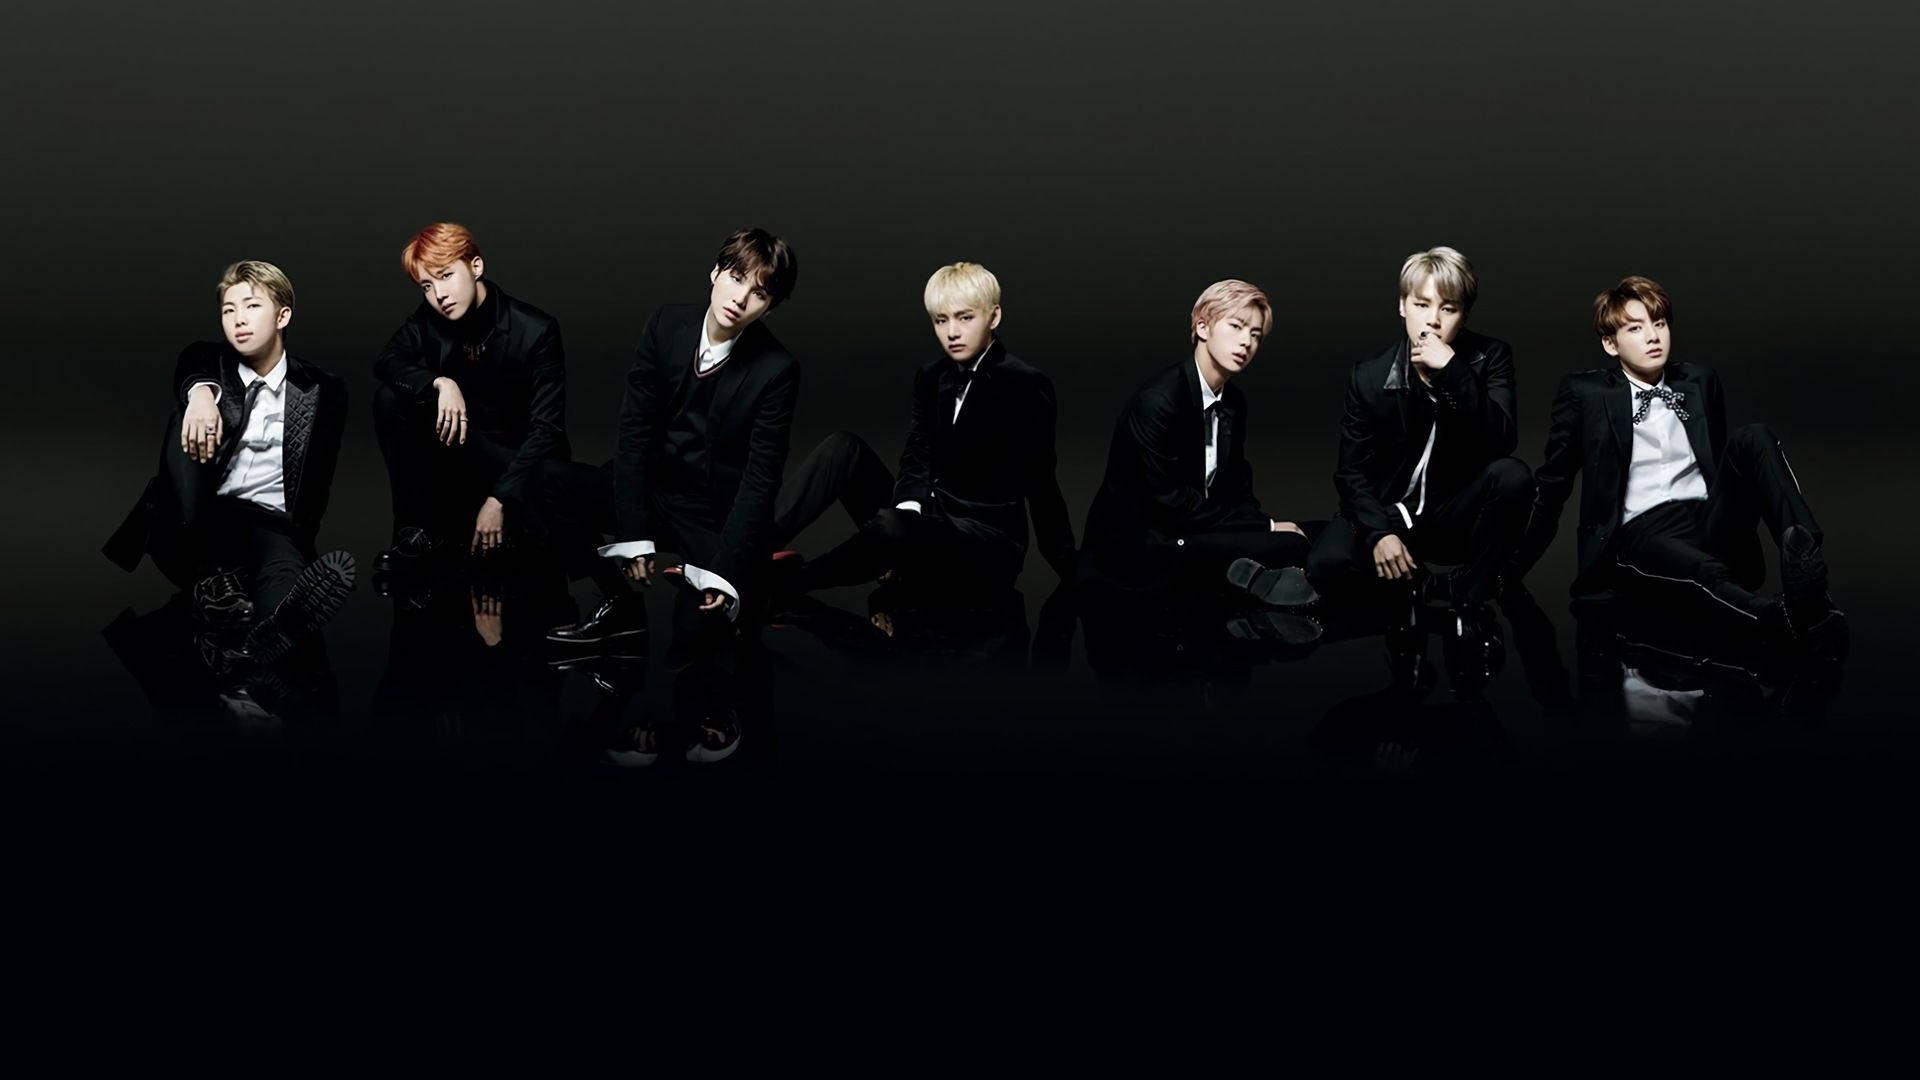 Bts Members In Black On Black Floor Laptop Background